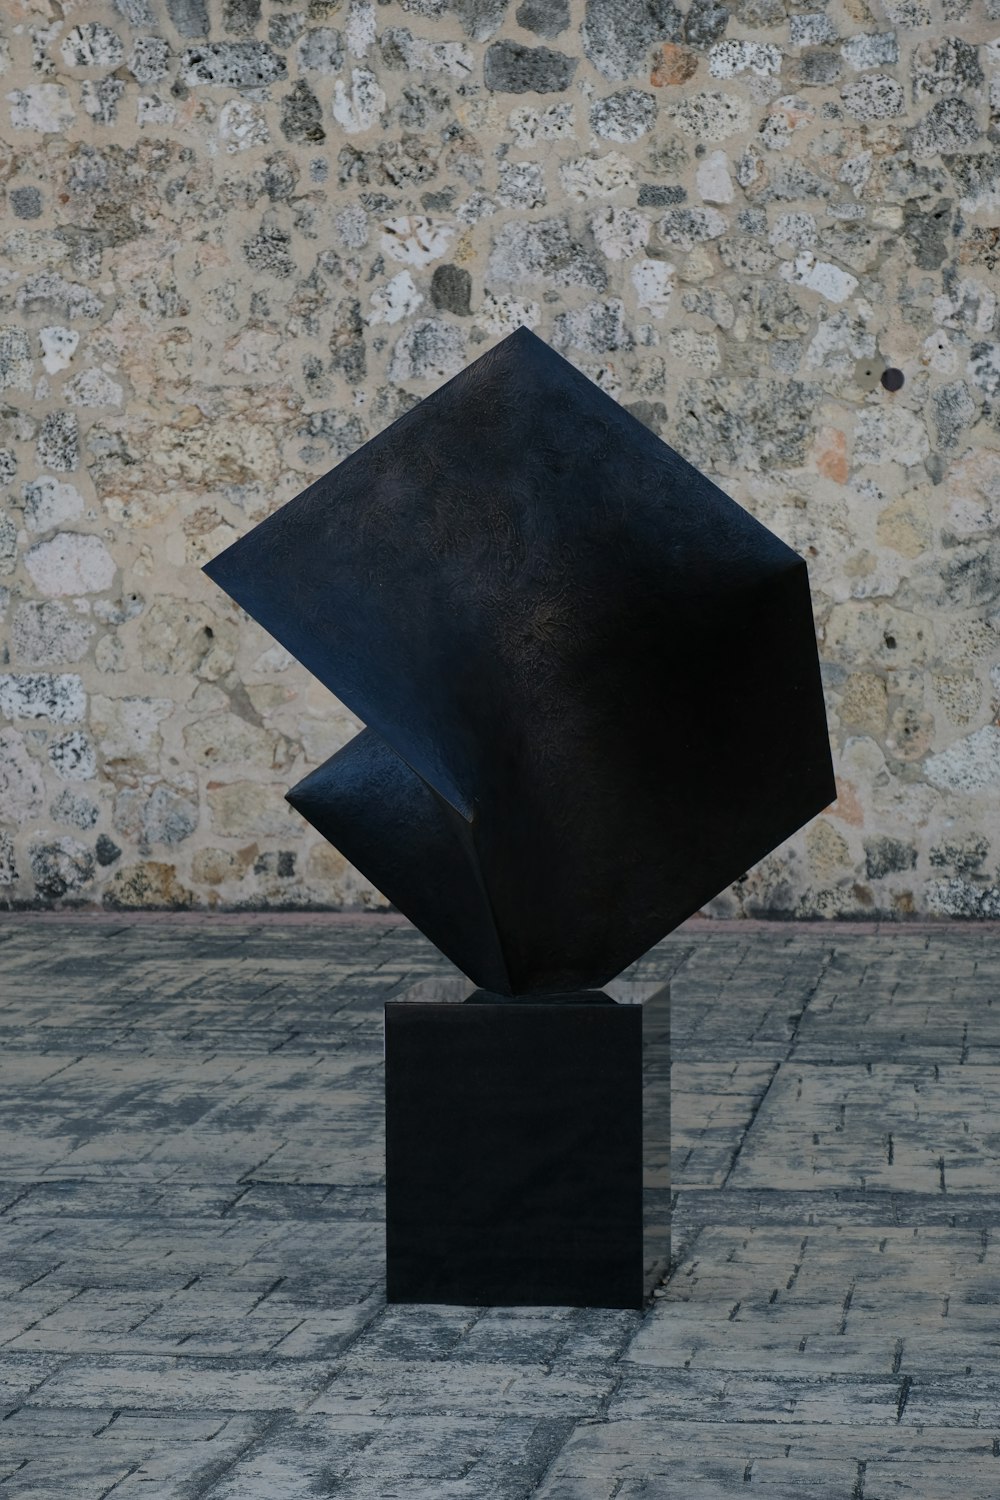 eine schwarze Skulptur, die auf einem Ziegelboden sitzt